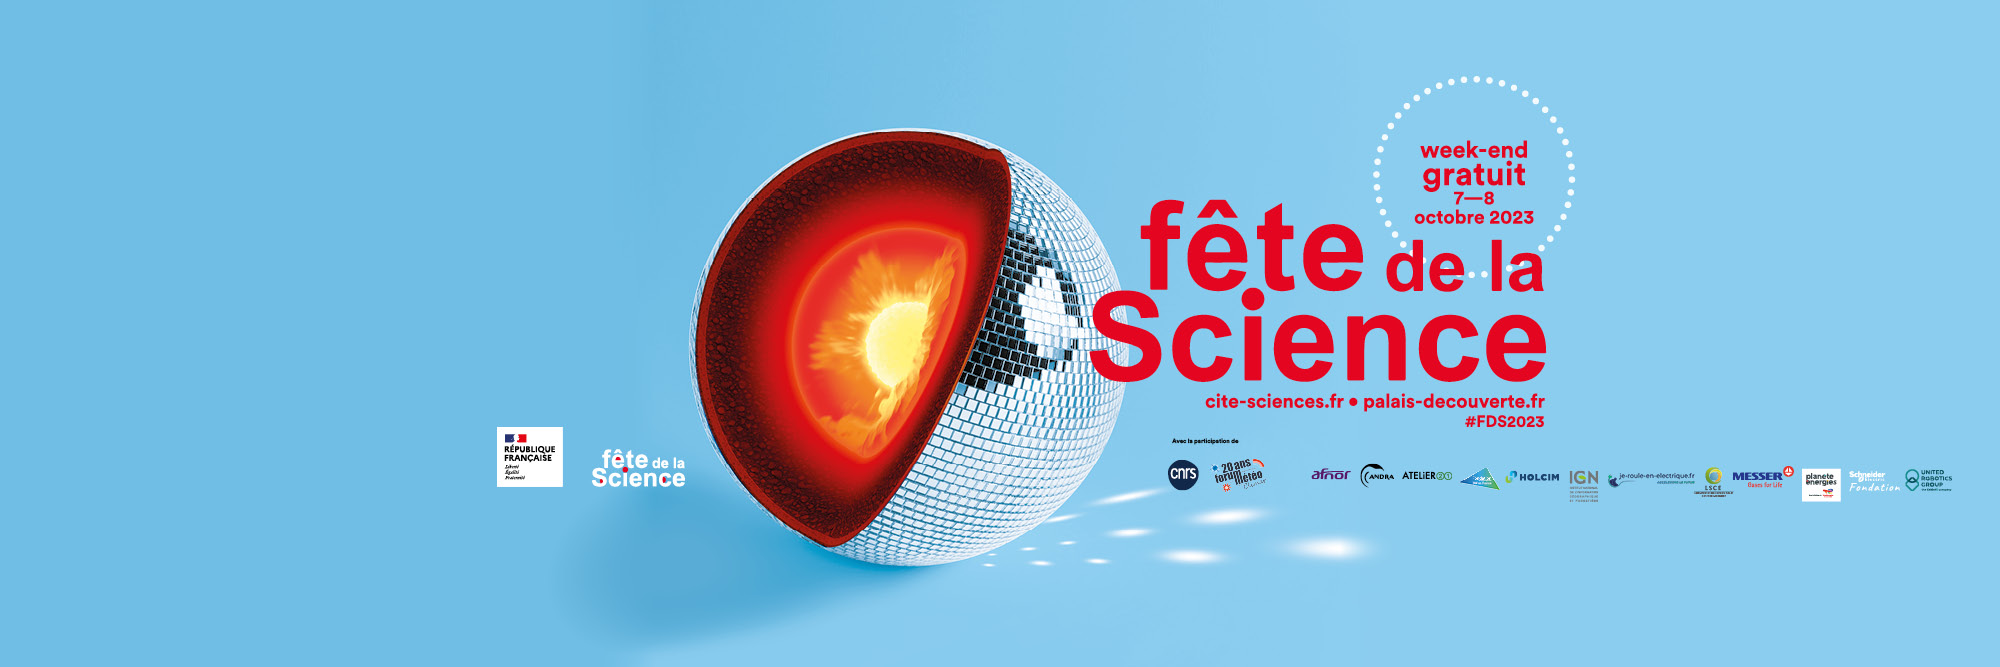 Bannière de la fête des Sciences 2023